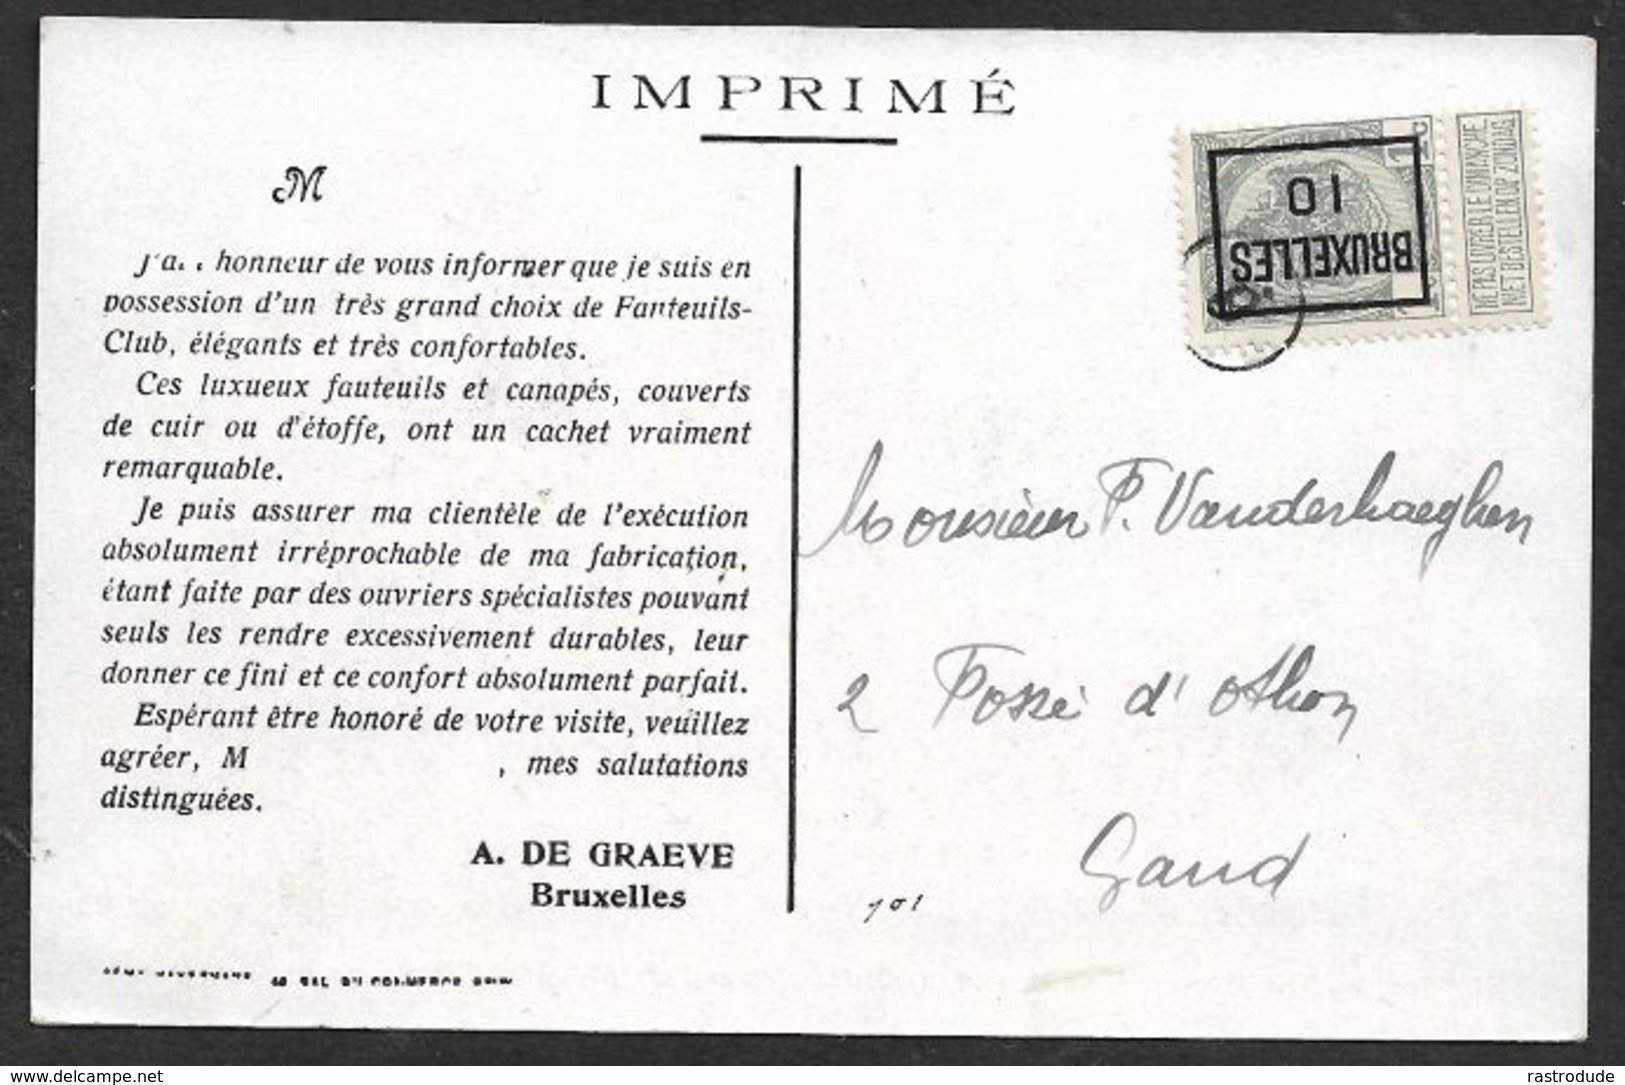 1910 BELGIQUE - IMPRIMÉ PRÉOBLITÉRÉ 1c BRUXELLES  A GAND  - LUXUEUX FAUTEUILS ET CANAPÉS - Roller Precancels 1900-09